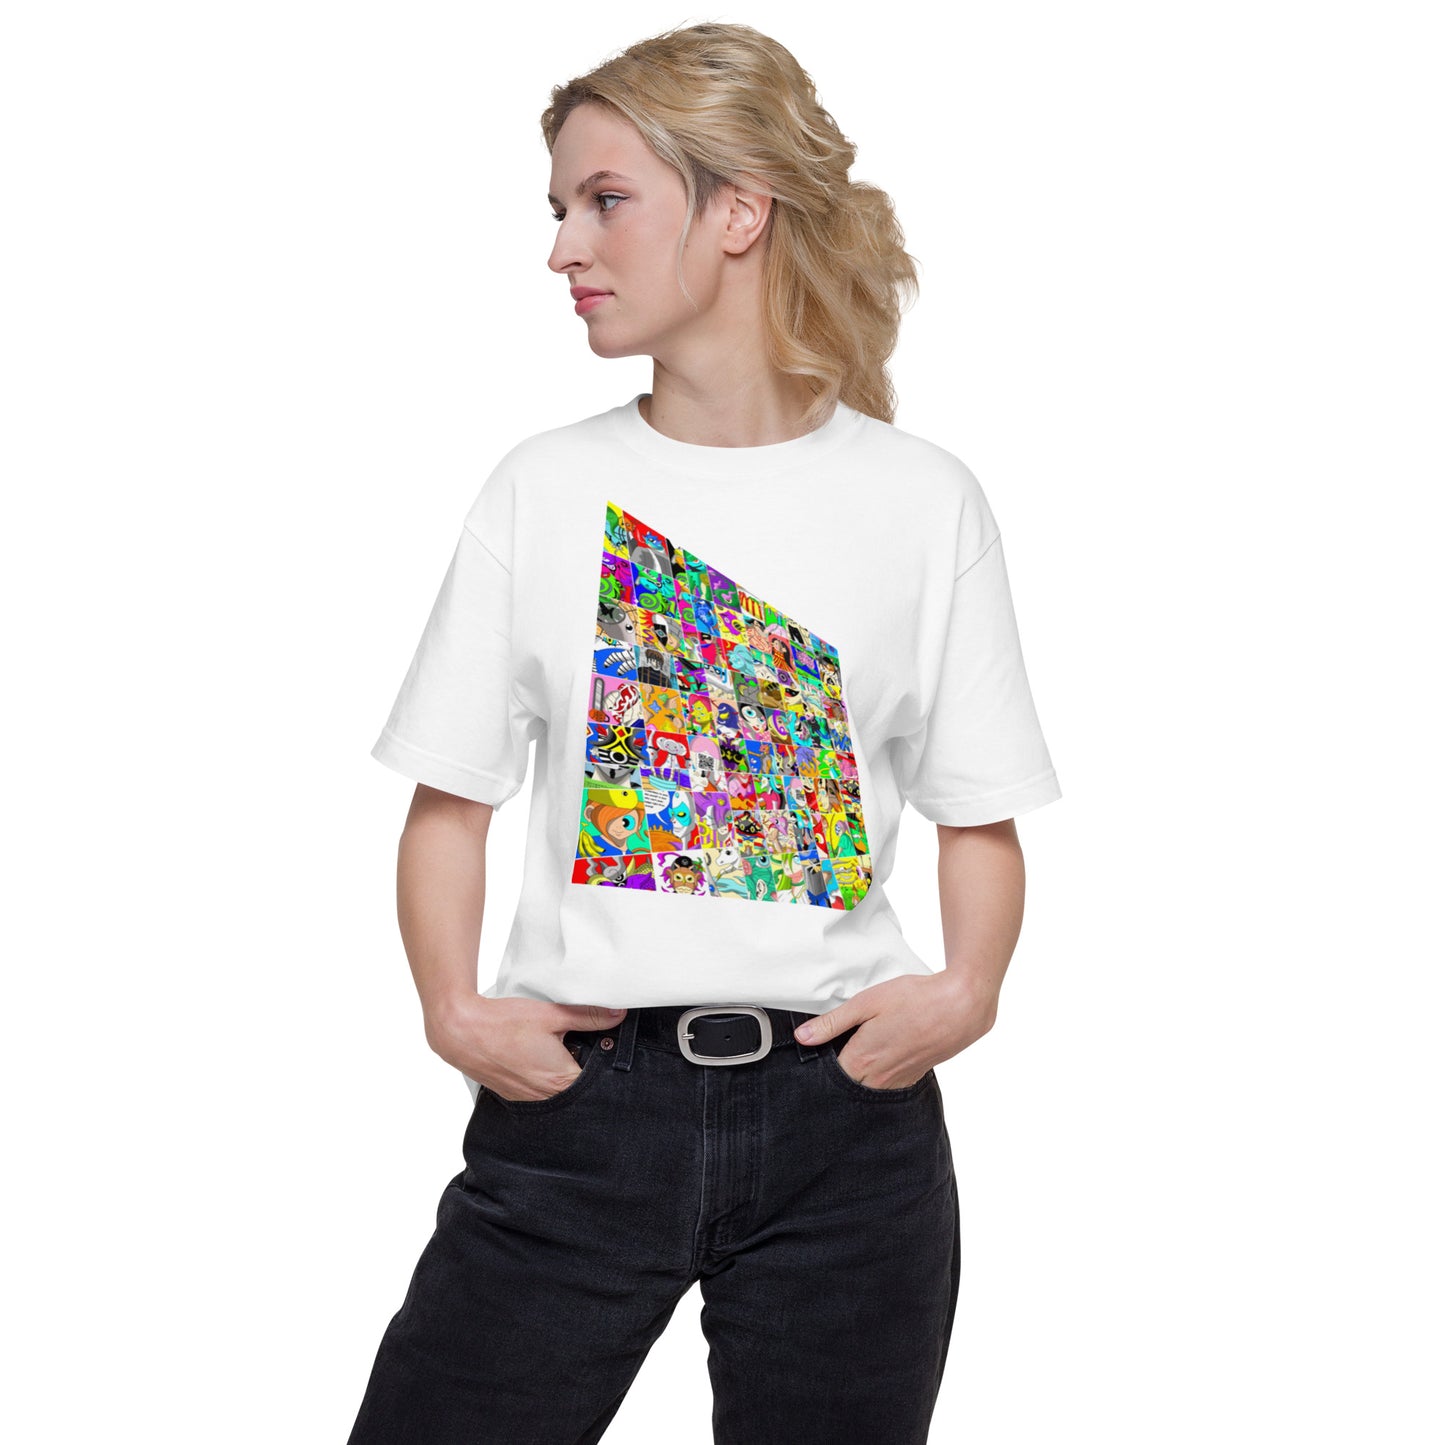 035_Ava-10-前面プリントTシャツ-アートをデザイン